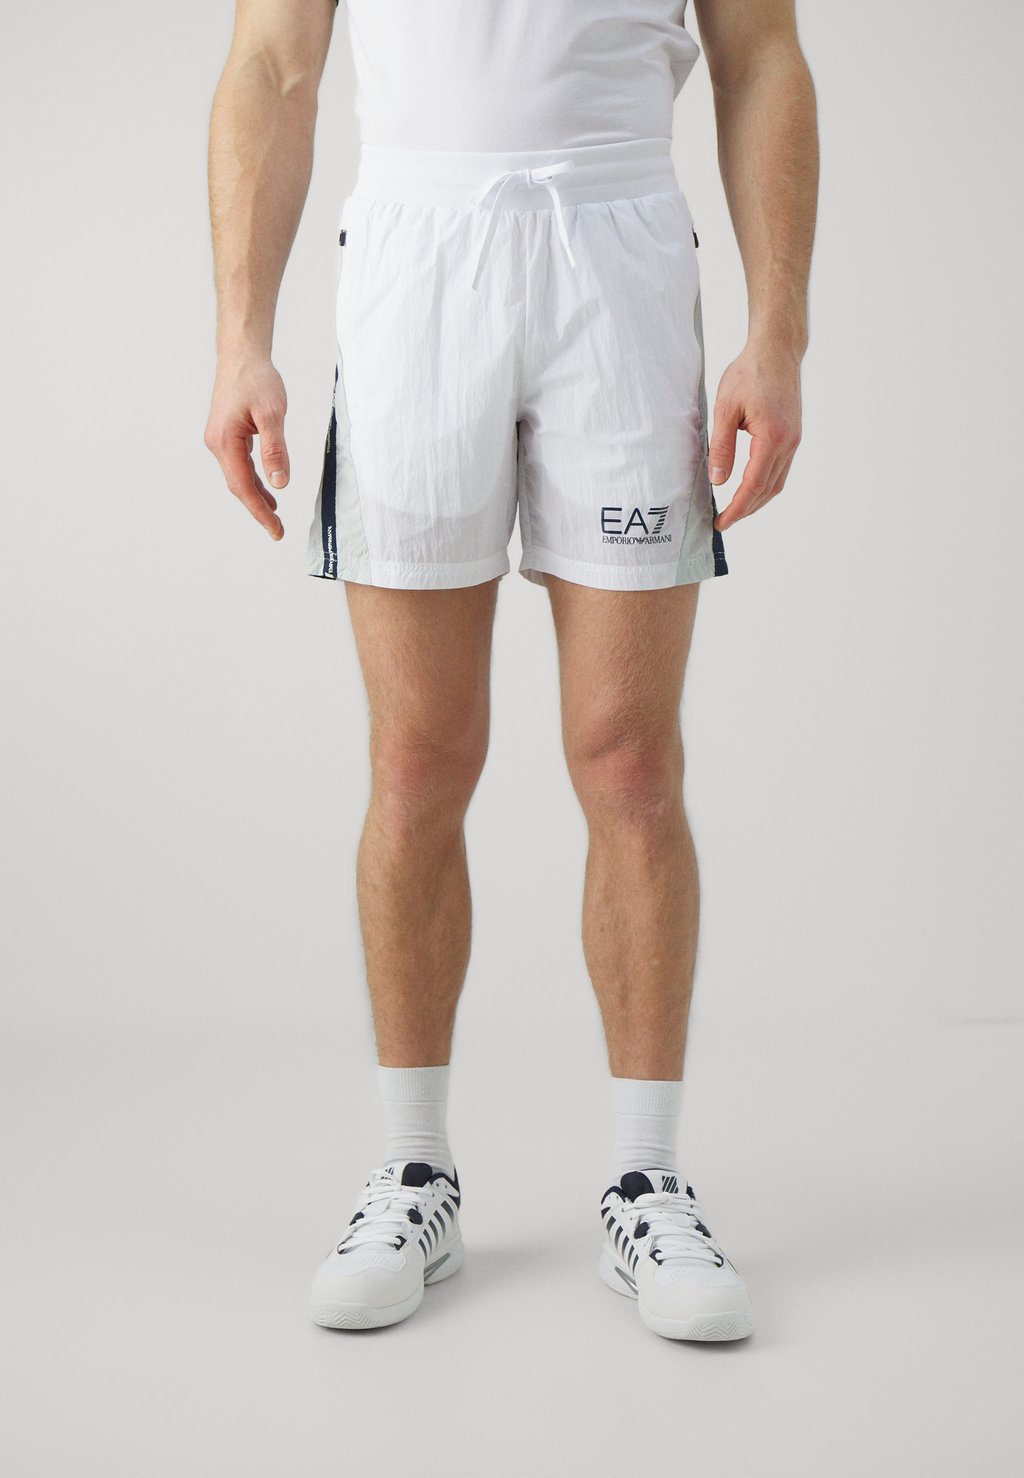 Шорты спортивные Tennis Club EA7 Emporio Armani, белый спортивные шорты tennis pro shorts ea7 emporio armani цвет navy blue